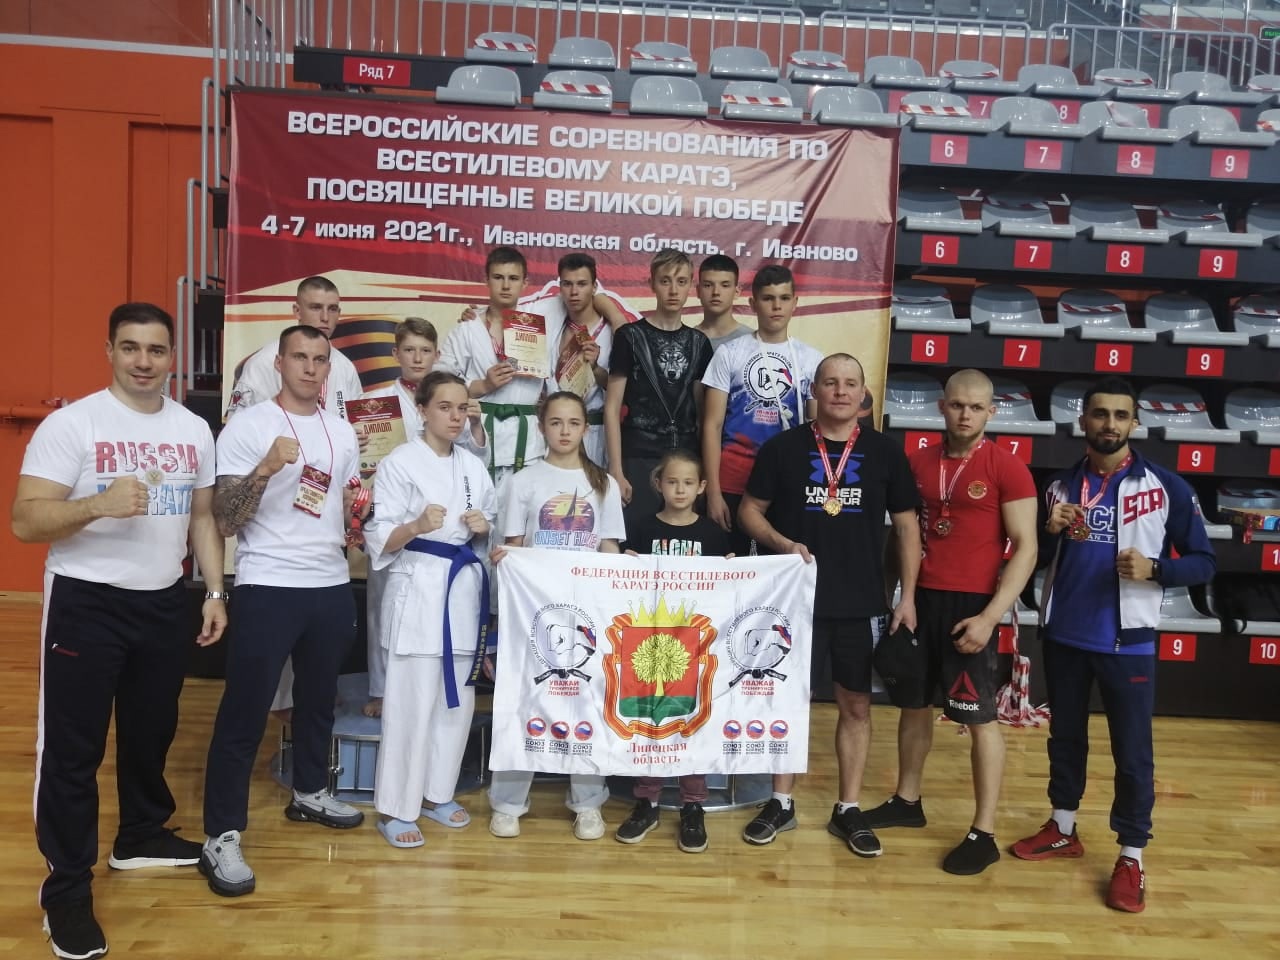 Всероссийские соревнования по всестилевому каратэ в Иваново!